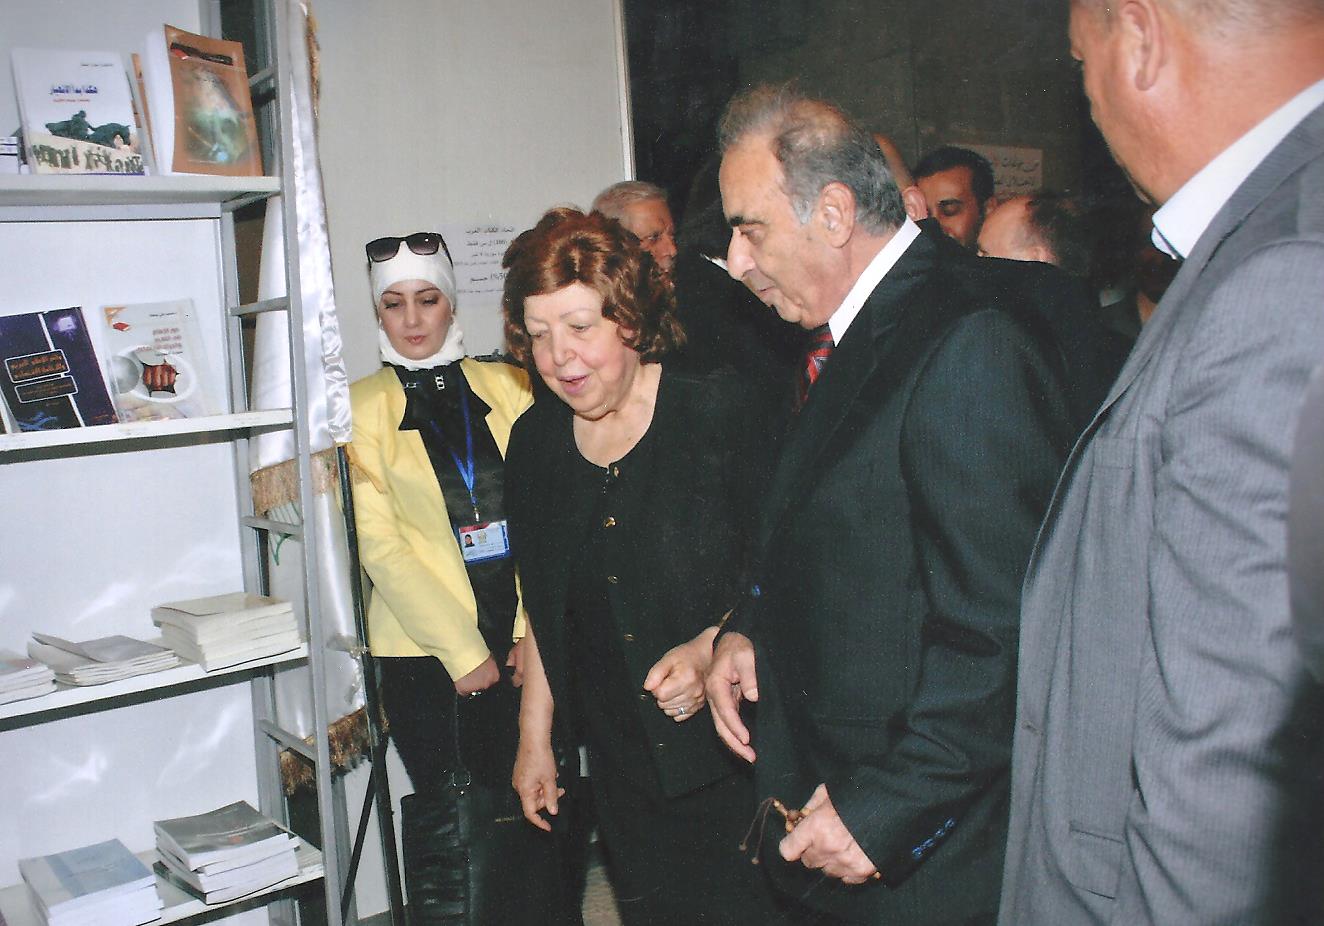 برعاية الرئيس الأسد.. الدكتورة نجاح العطار تفتتح الدورة الحادية والثلاثين من معرض الكتاب في مكتبة الأسد الوطنية